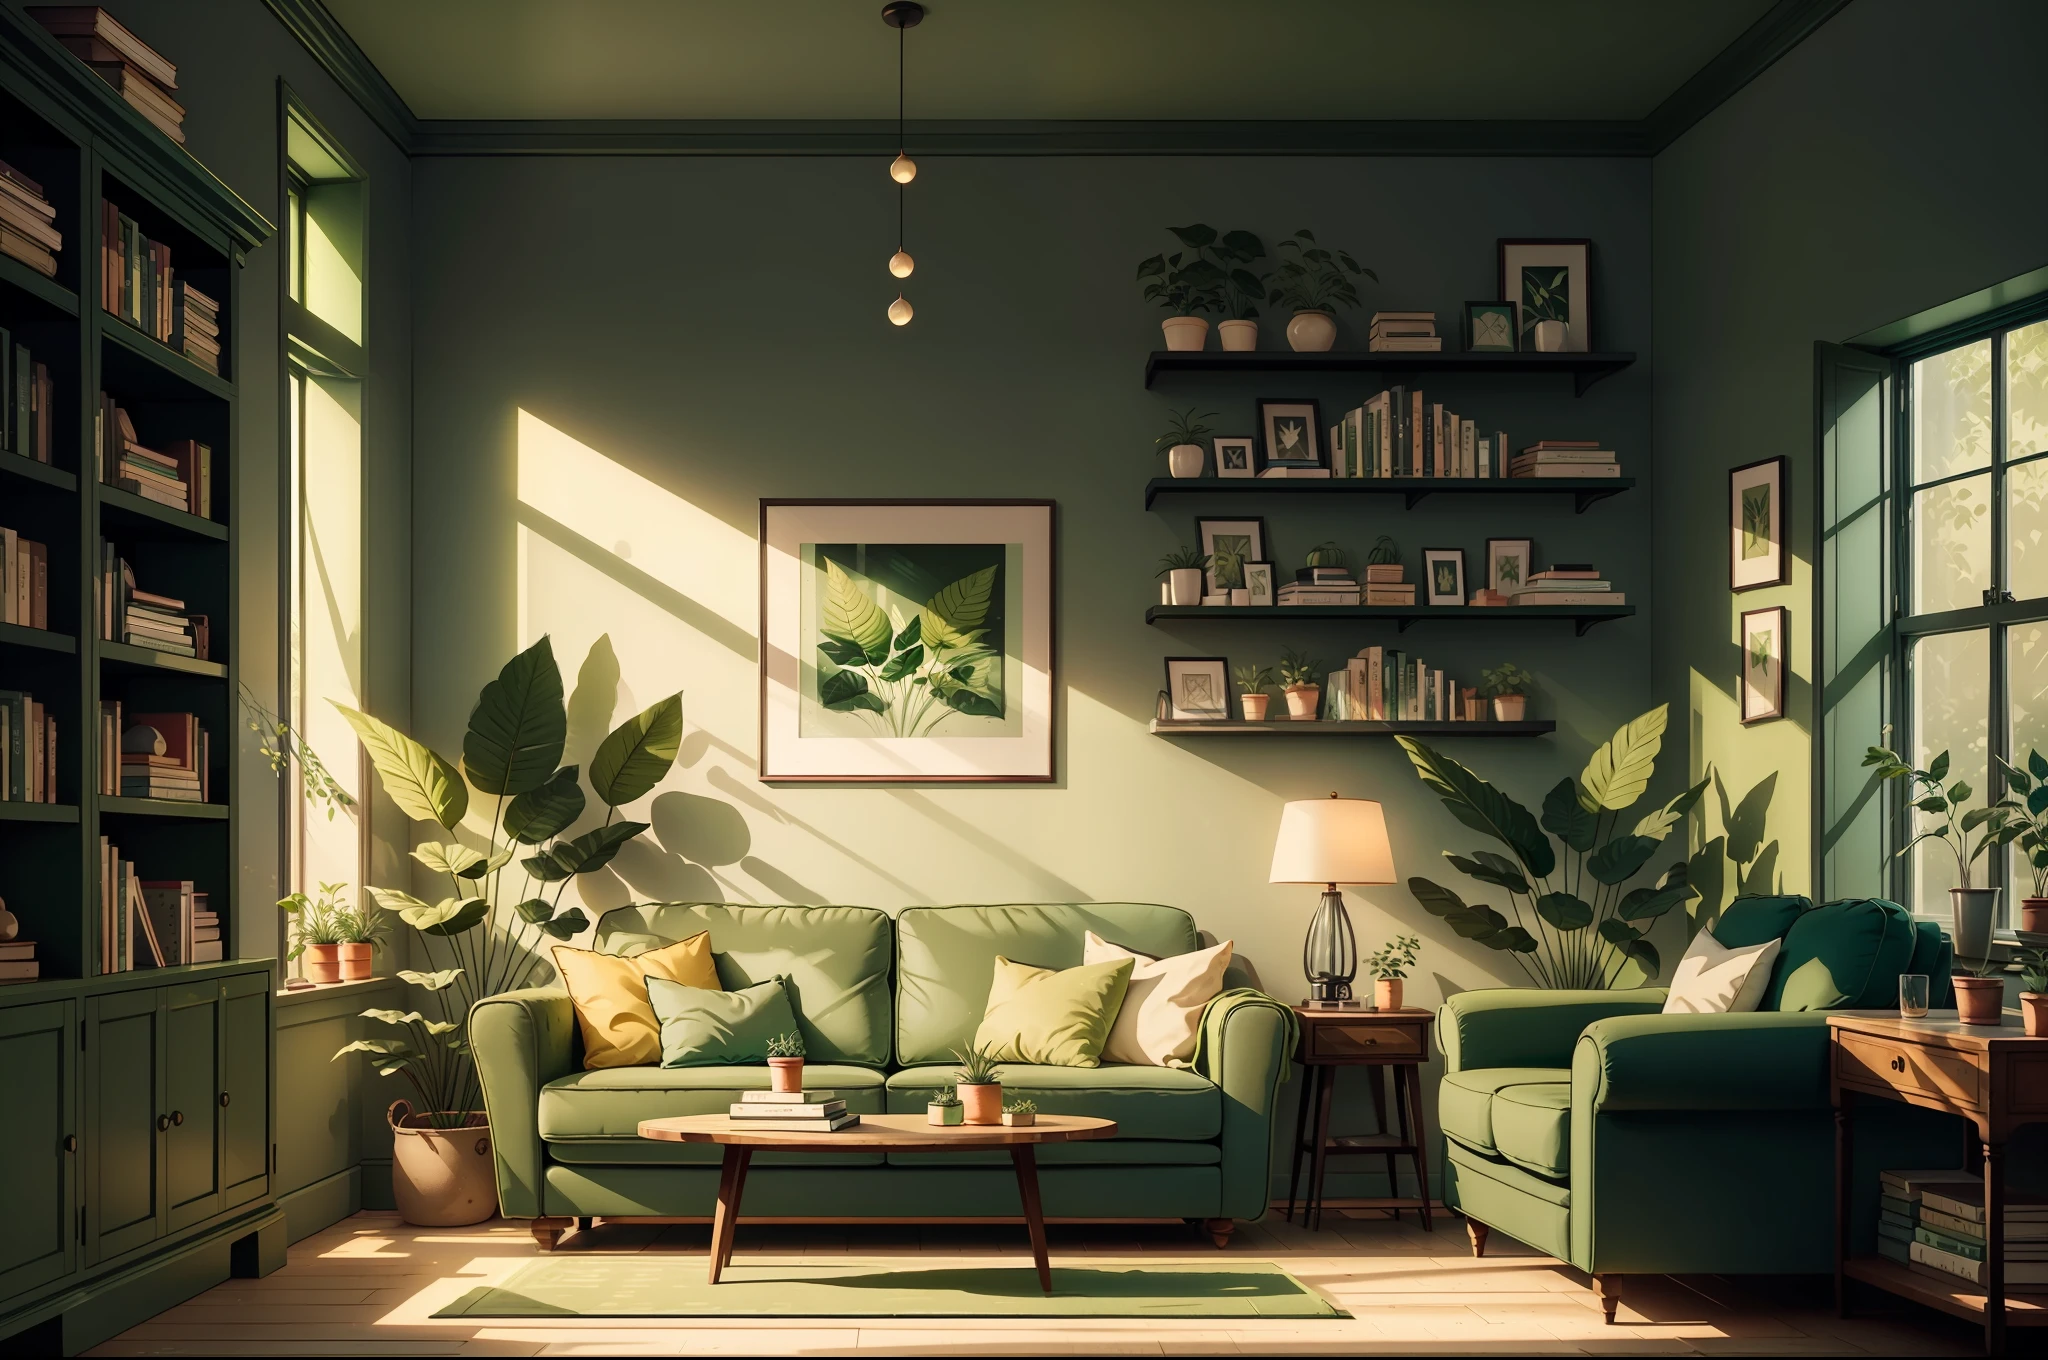 녹색 소파가 있는 거실, 벽에는 녹색 식물, 책이 있는 책장, 아름다운 이미지를 지닌 영화 같은 장면을 담은 사진, 햇빛이 비치는 맑은 환경